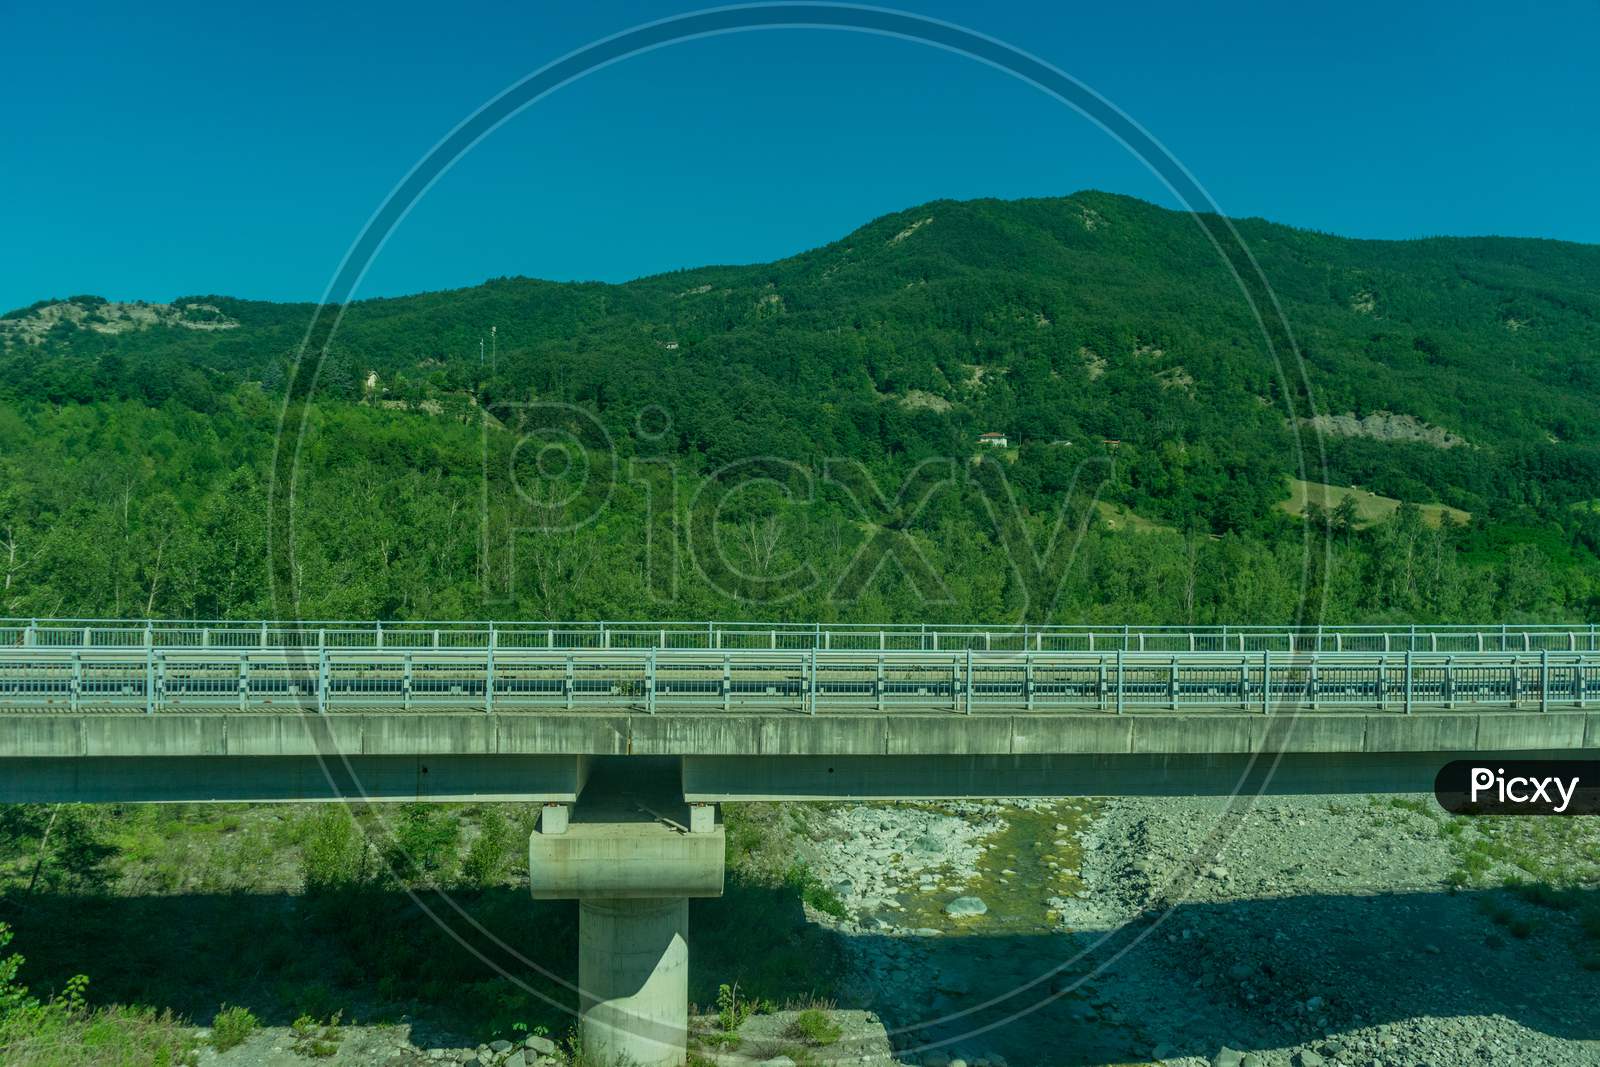 Italy,La Spezia To Kasltelruth Train, A Bridge Over A Body Of Water